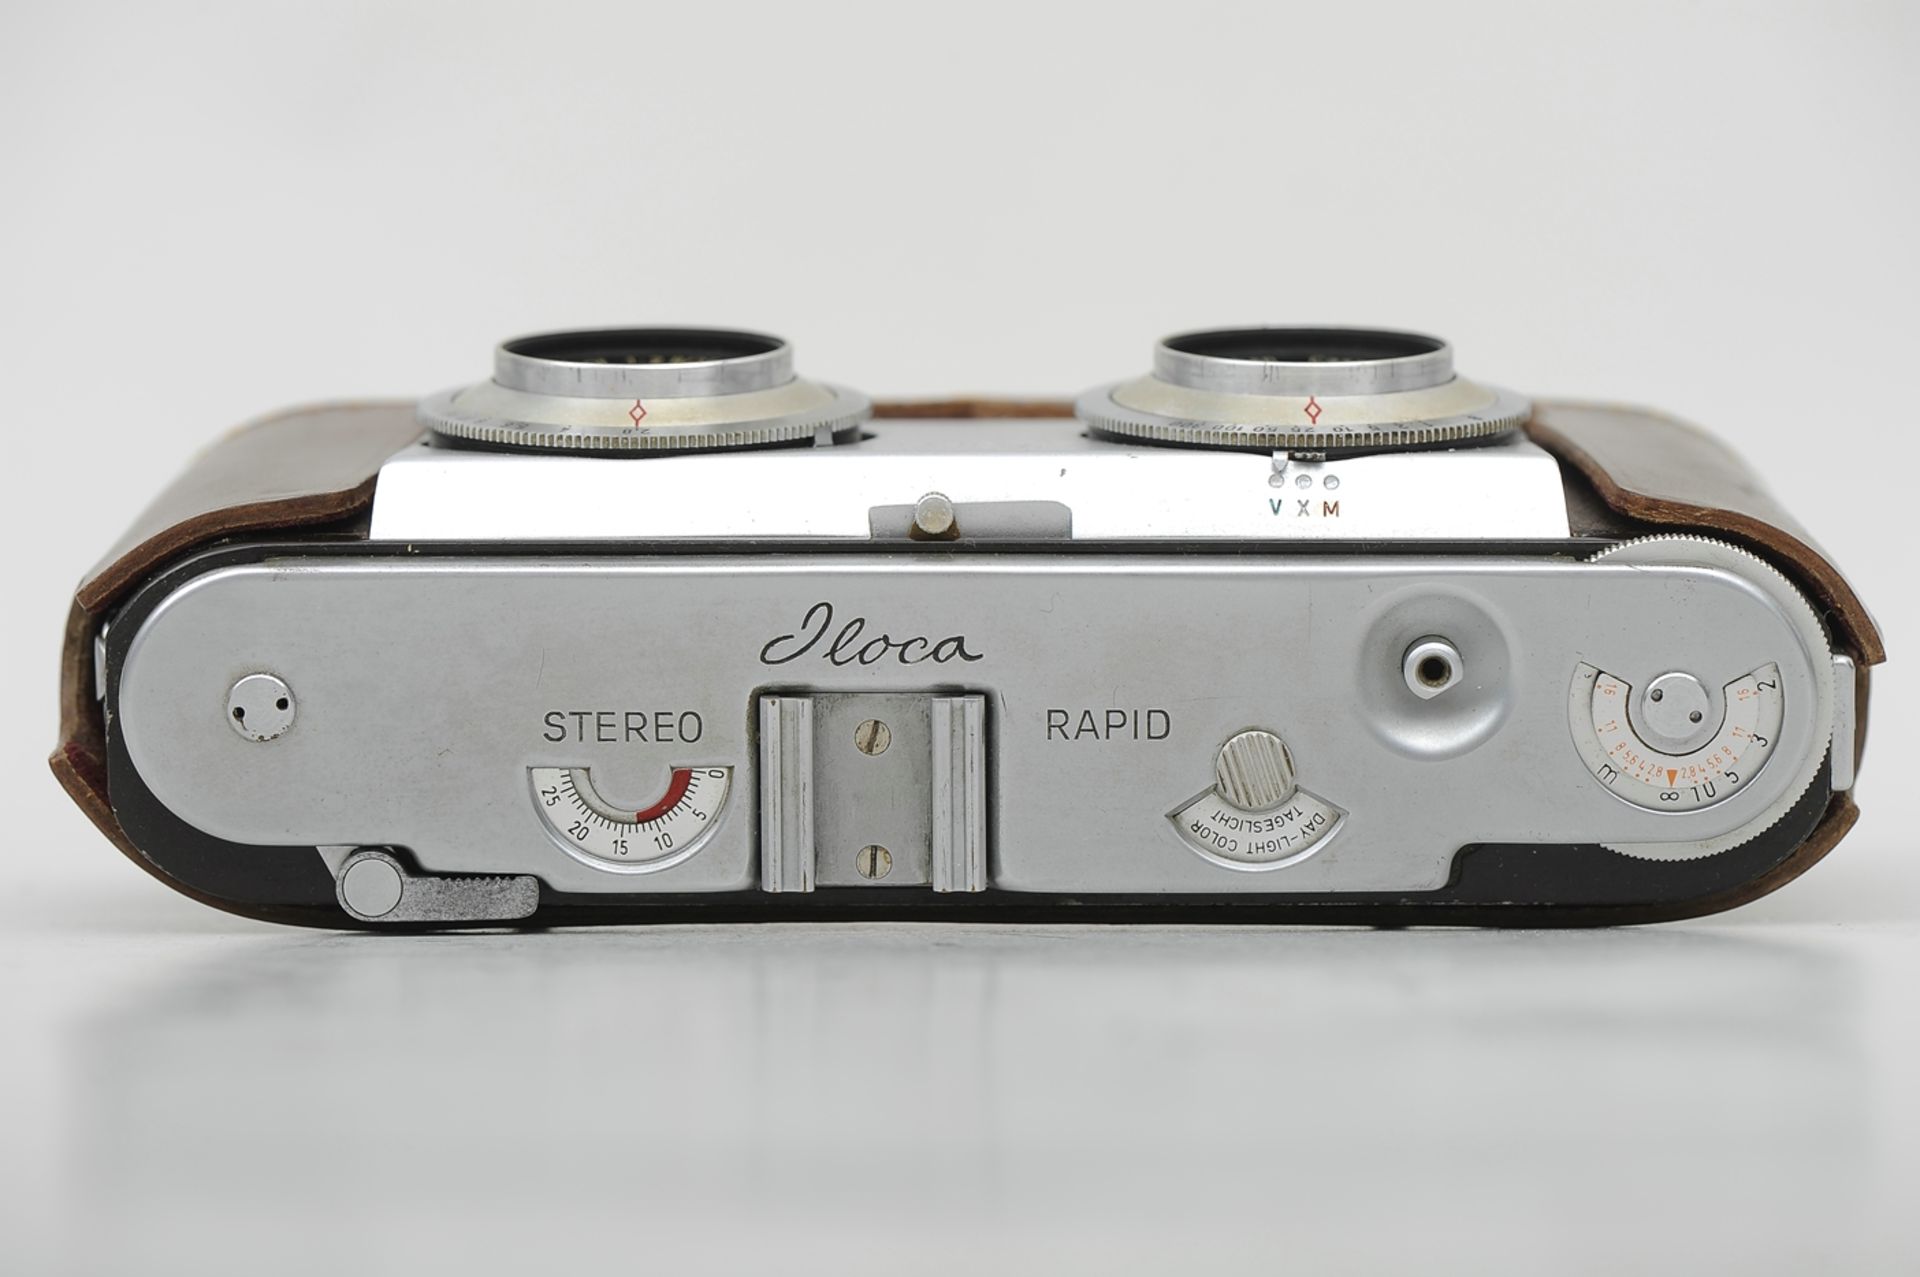 "ILOCA 3D" Stereo Rapid Kamera mit Steinheil Cassait-Objektiven 1:2,8/35 mm, No. 1432237 und 143275 - Image 3 of 7